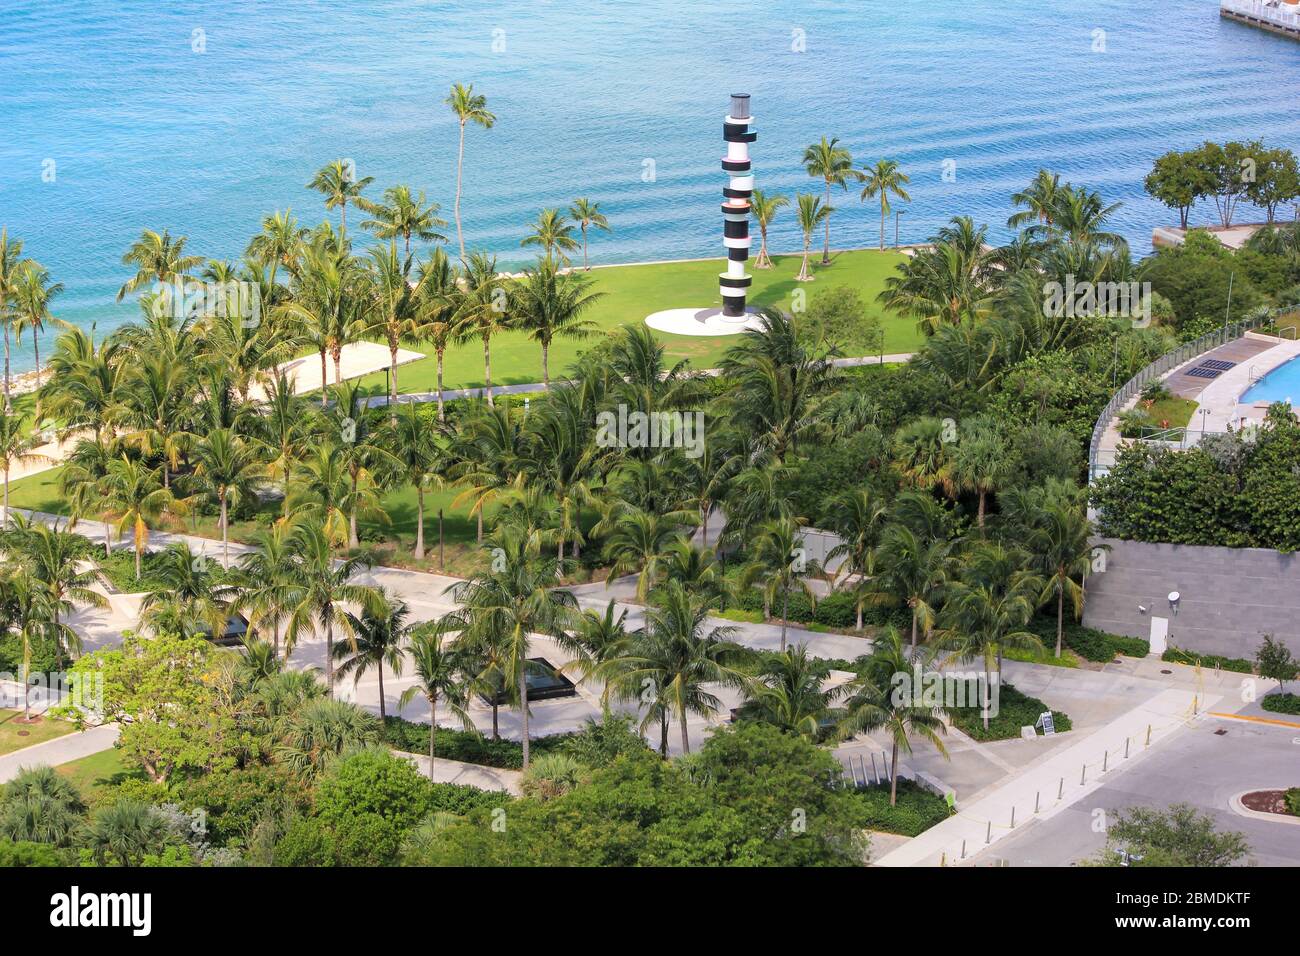 Miami Beach, Florida South pointe Park am Wochenende wegen der Coronoavirus Regeln geschlossen, die von Besuchern missachtet werden Stockfoto